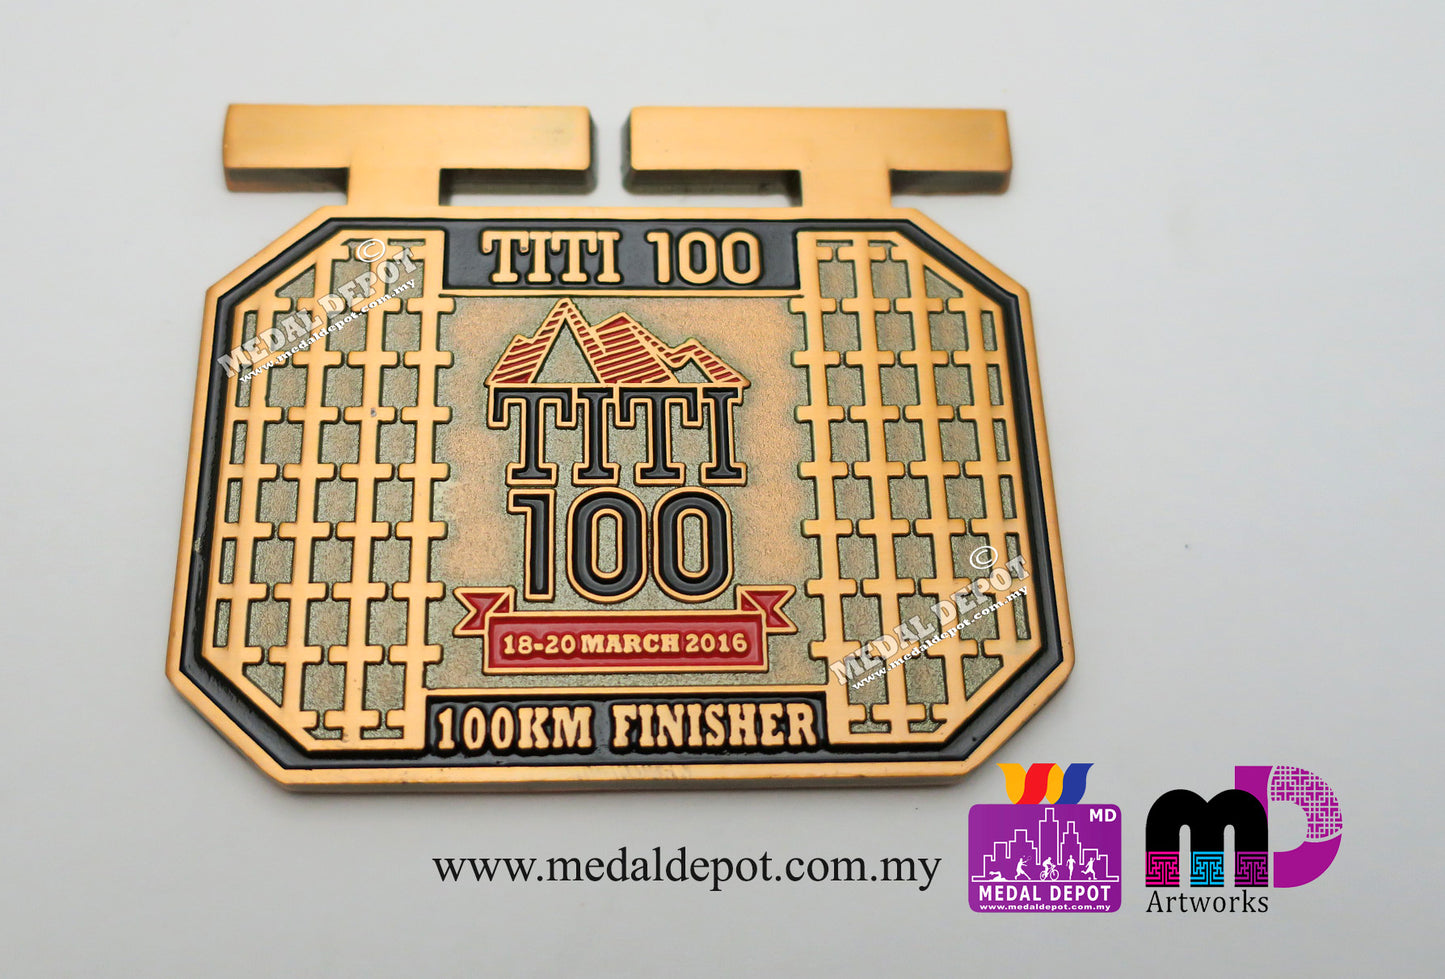 TITI 100 Ultra Marathon 2016